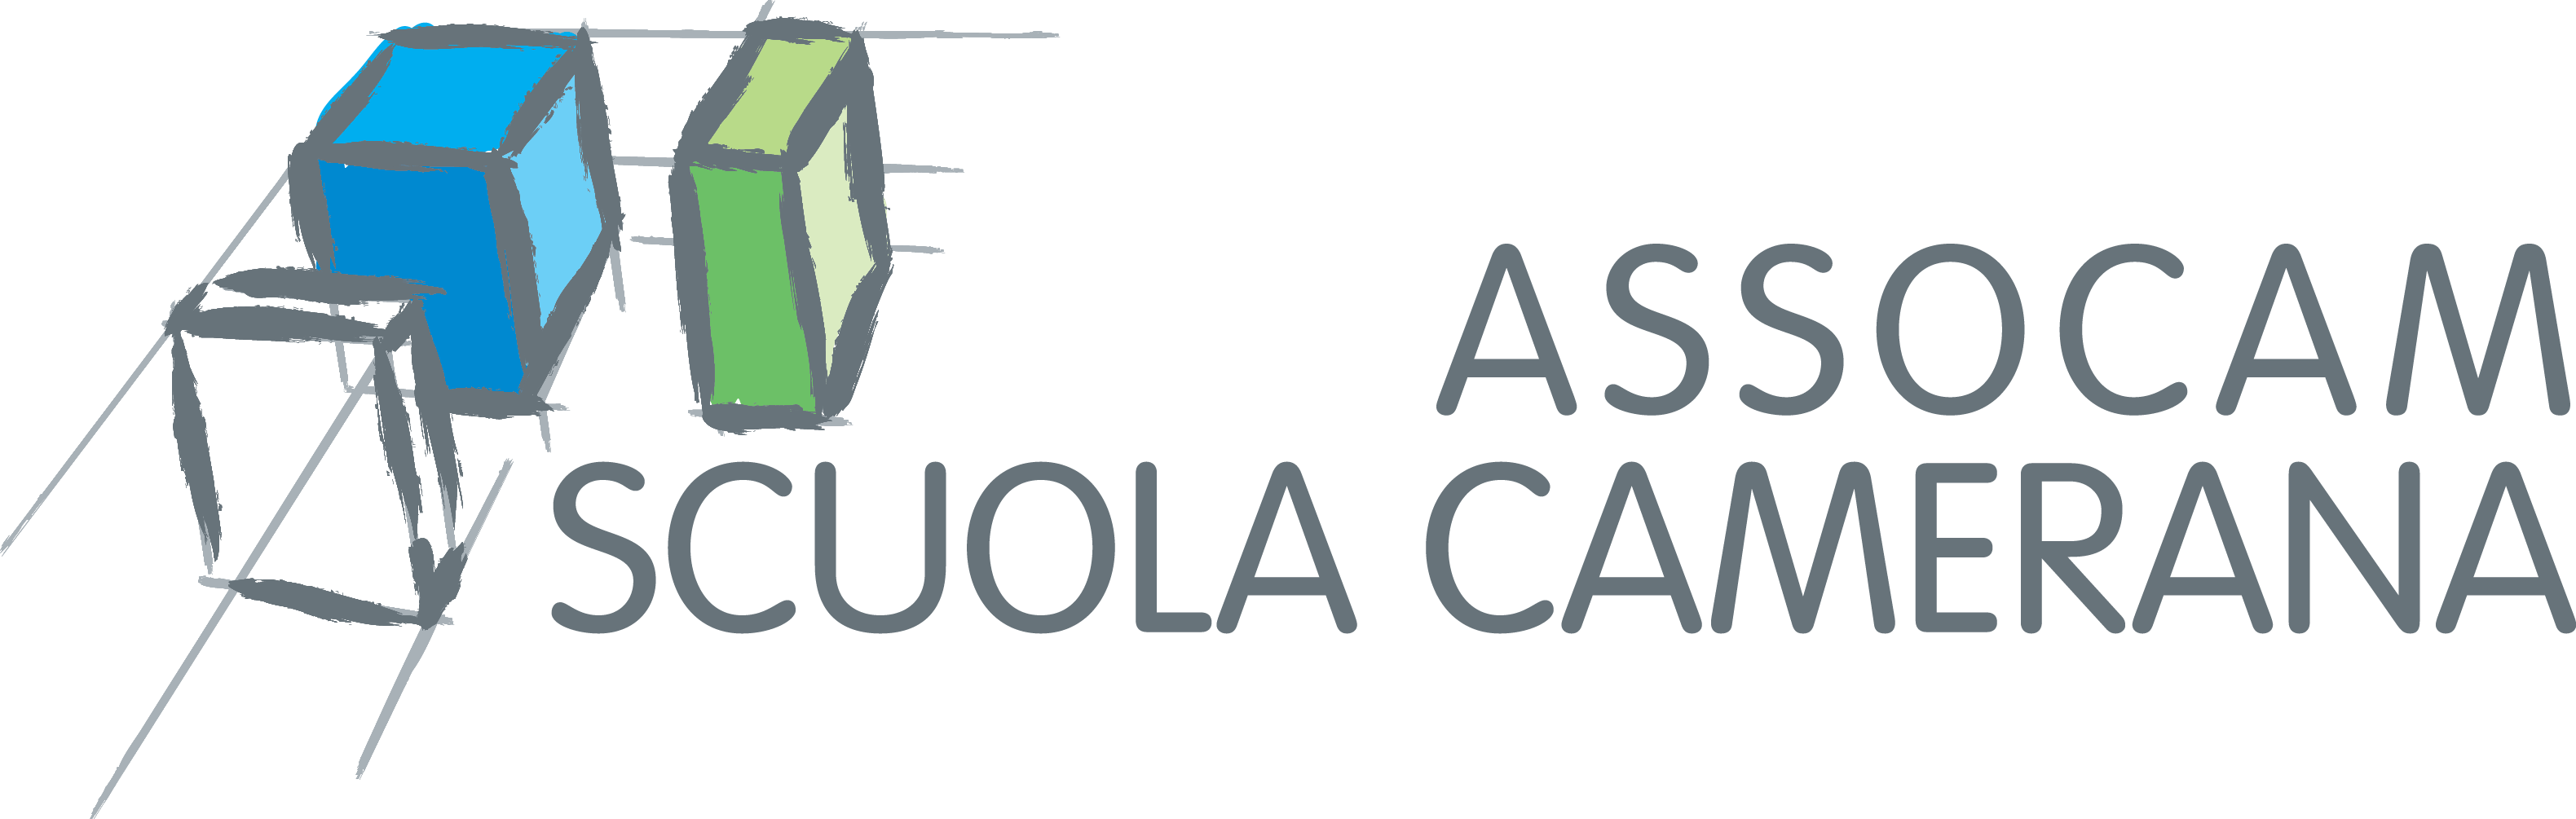 ASSOCAM Scuola Camerana logo